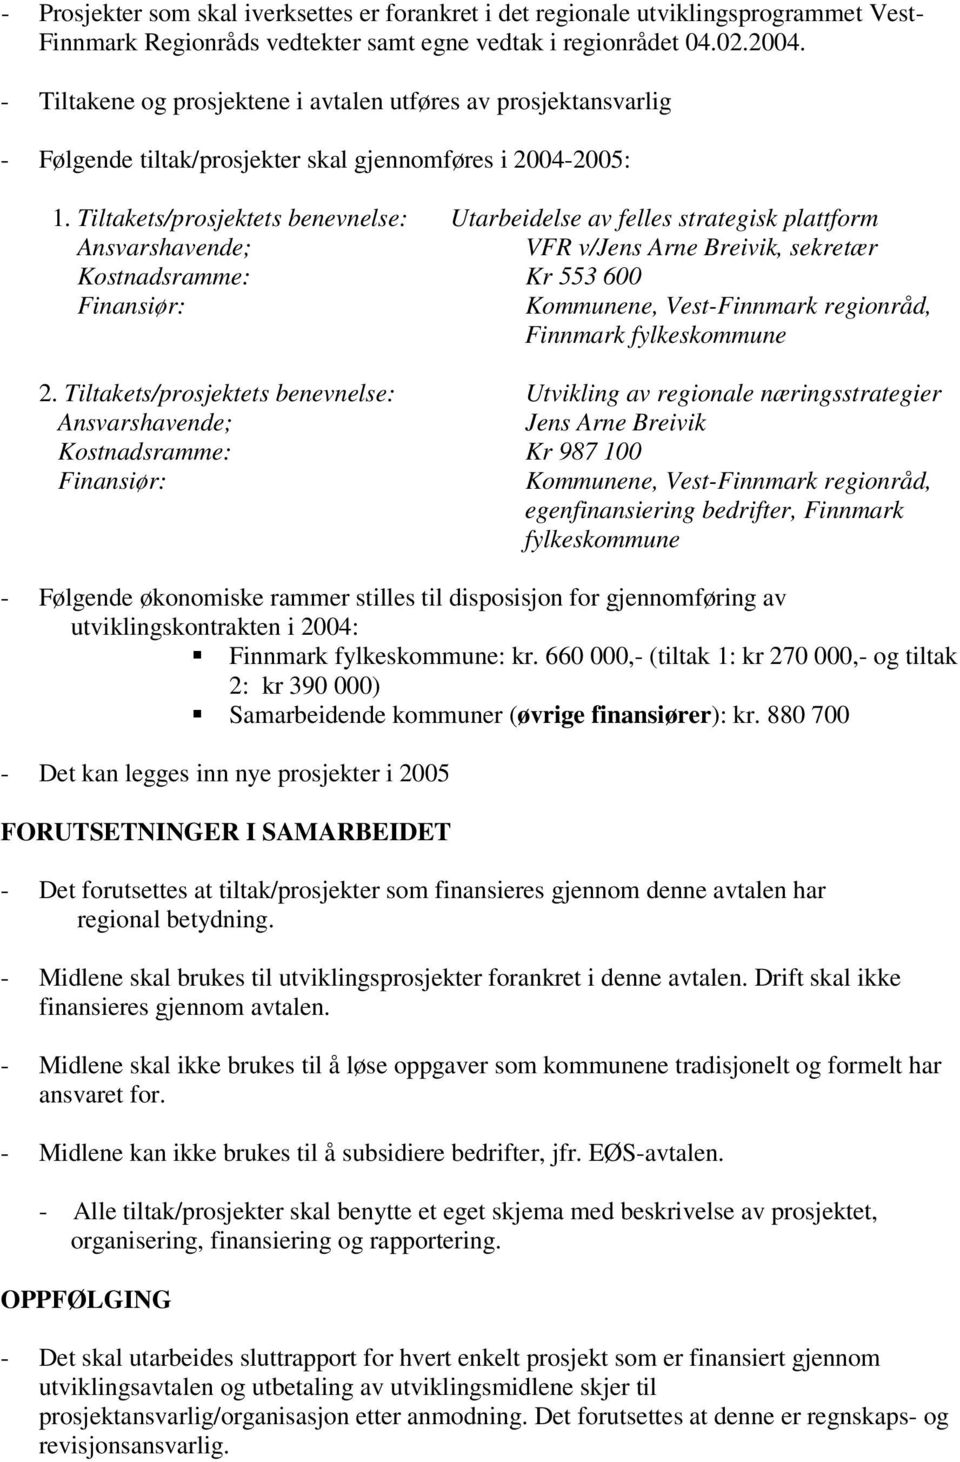 Tiltakets/prosjektets benevnelse: Utarbeidelse av felles strategisk plattform Ansvarshavende; VFR v/jens Arne Breivik, sekretær Kostnadsramme: Kr 553 600 Finansiør: Kommunene, Vest-Finnmark